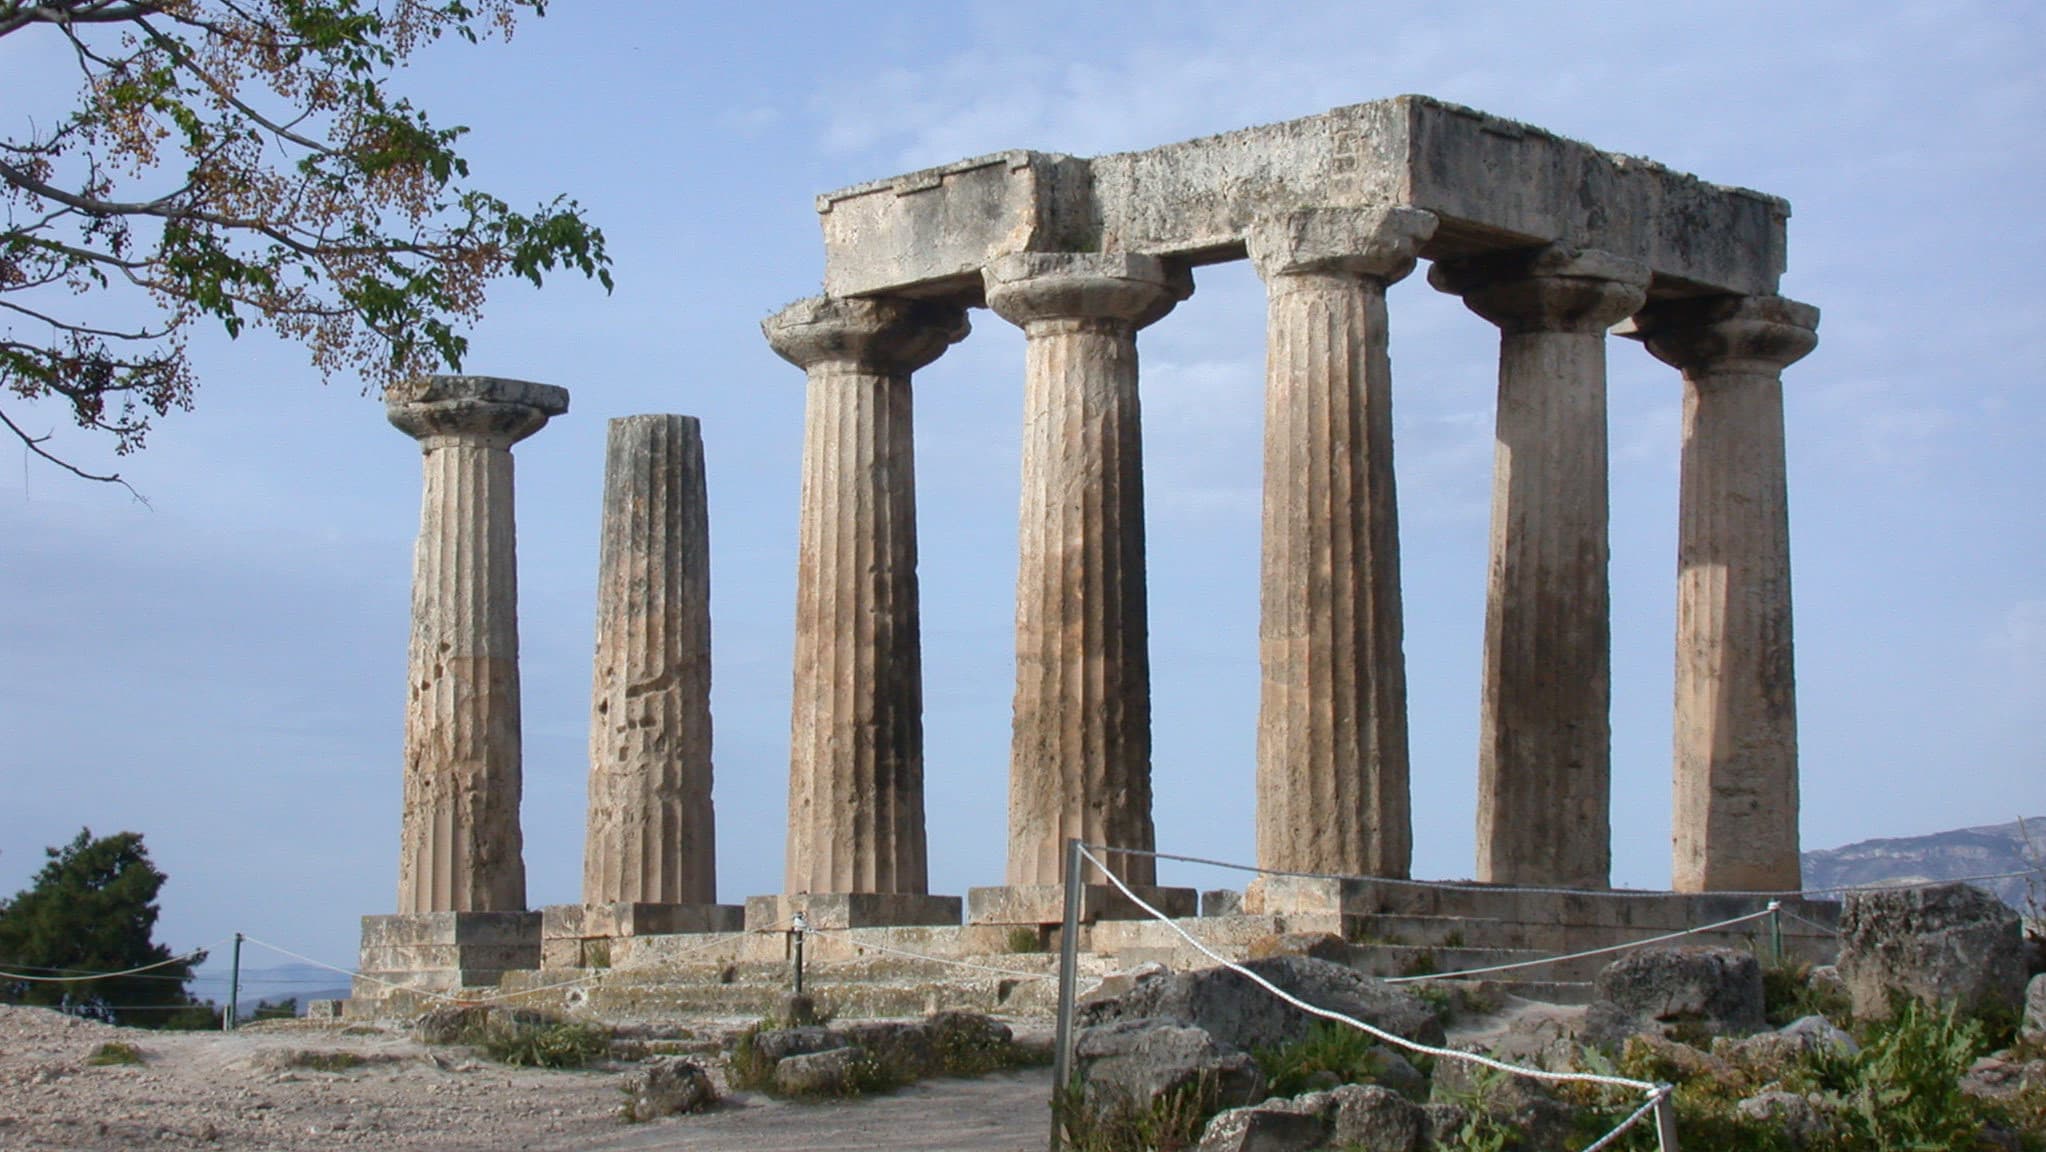 Templo com colunas e pedras, feito no período da Grécia Antiga.